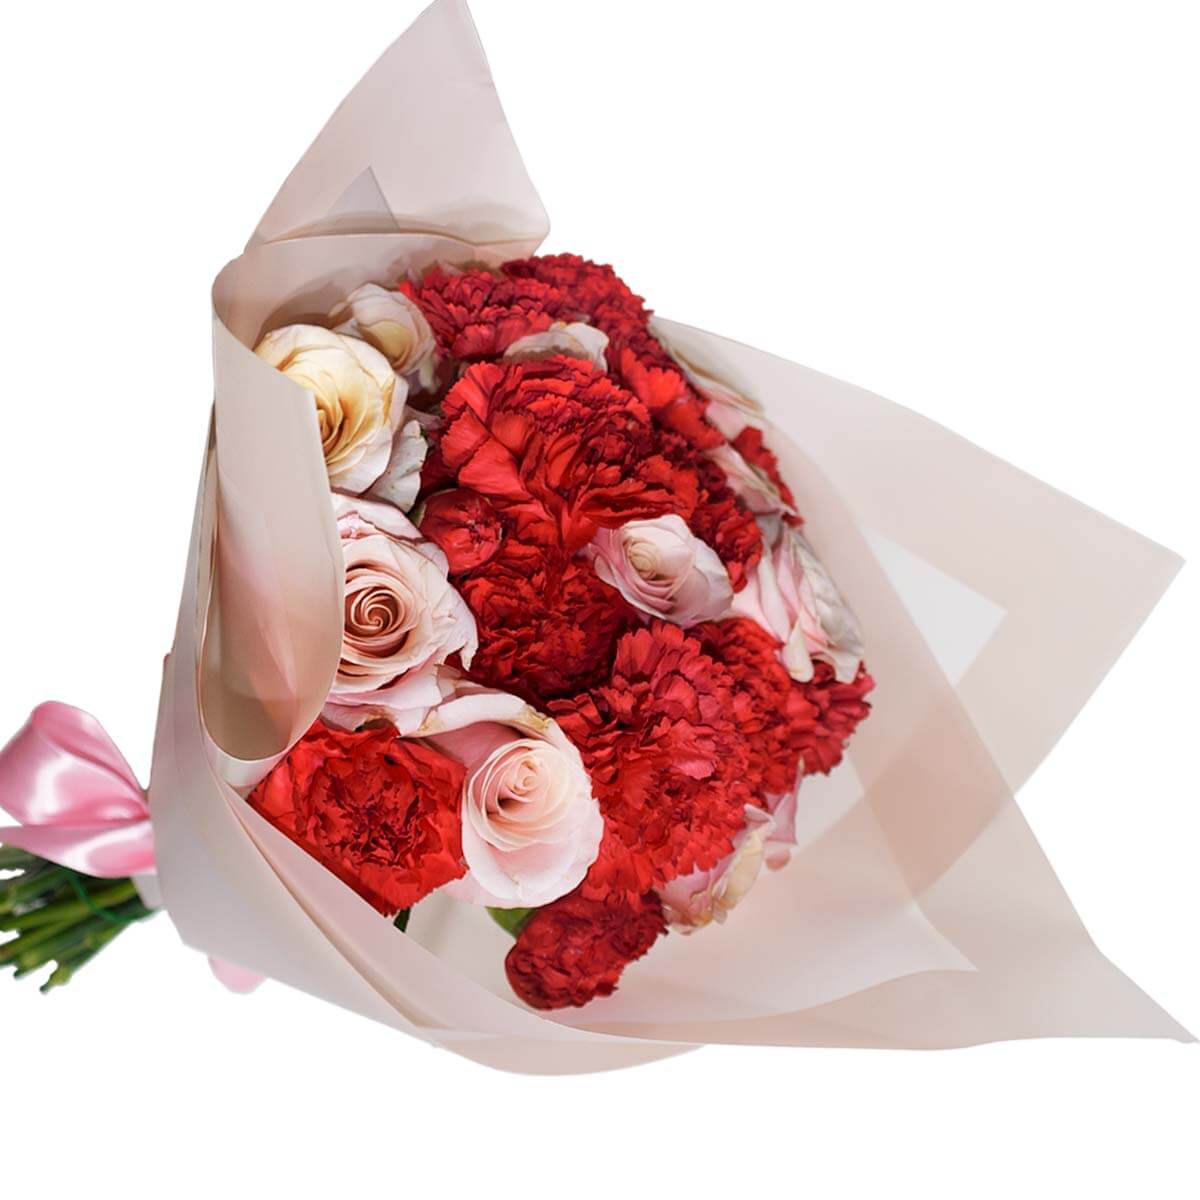 Ramo de rosas con claveles - Detalles a distancia | Envía Ramo de rosas